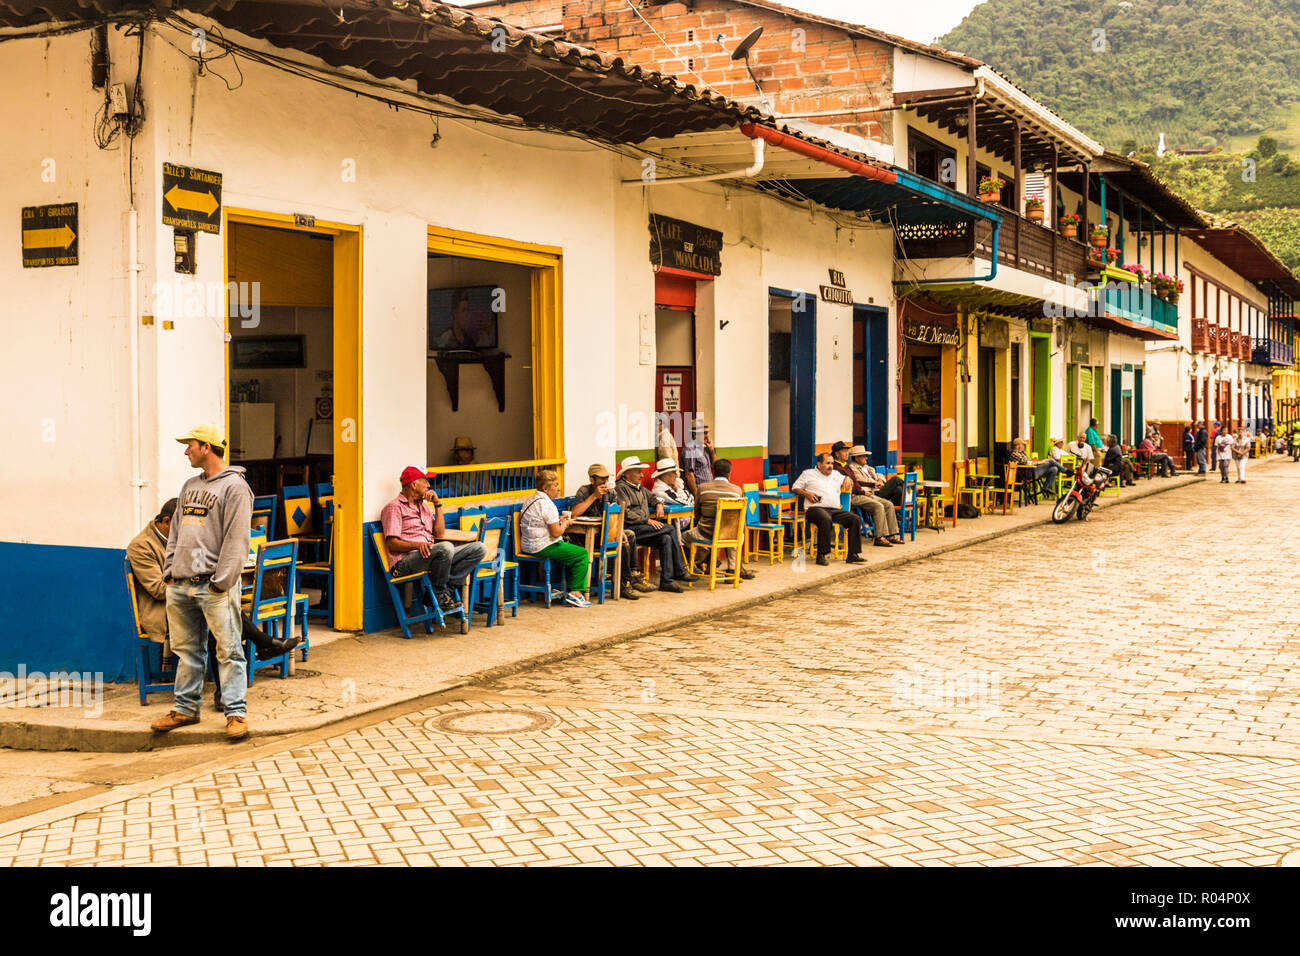 La population locale à socialiser sur la place principale, avec ses conserves, colorée, bâtiments coloniaux, Jardin, Colombie, Amérique du Sud Banque D'Images